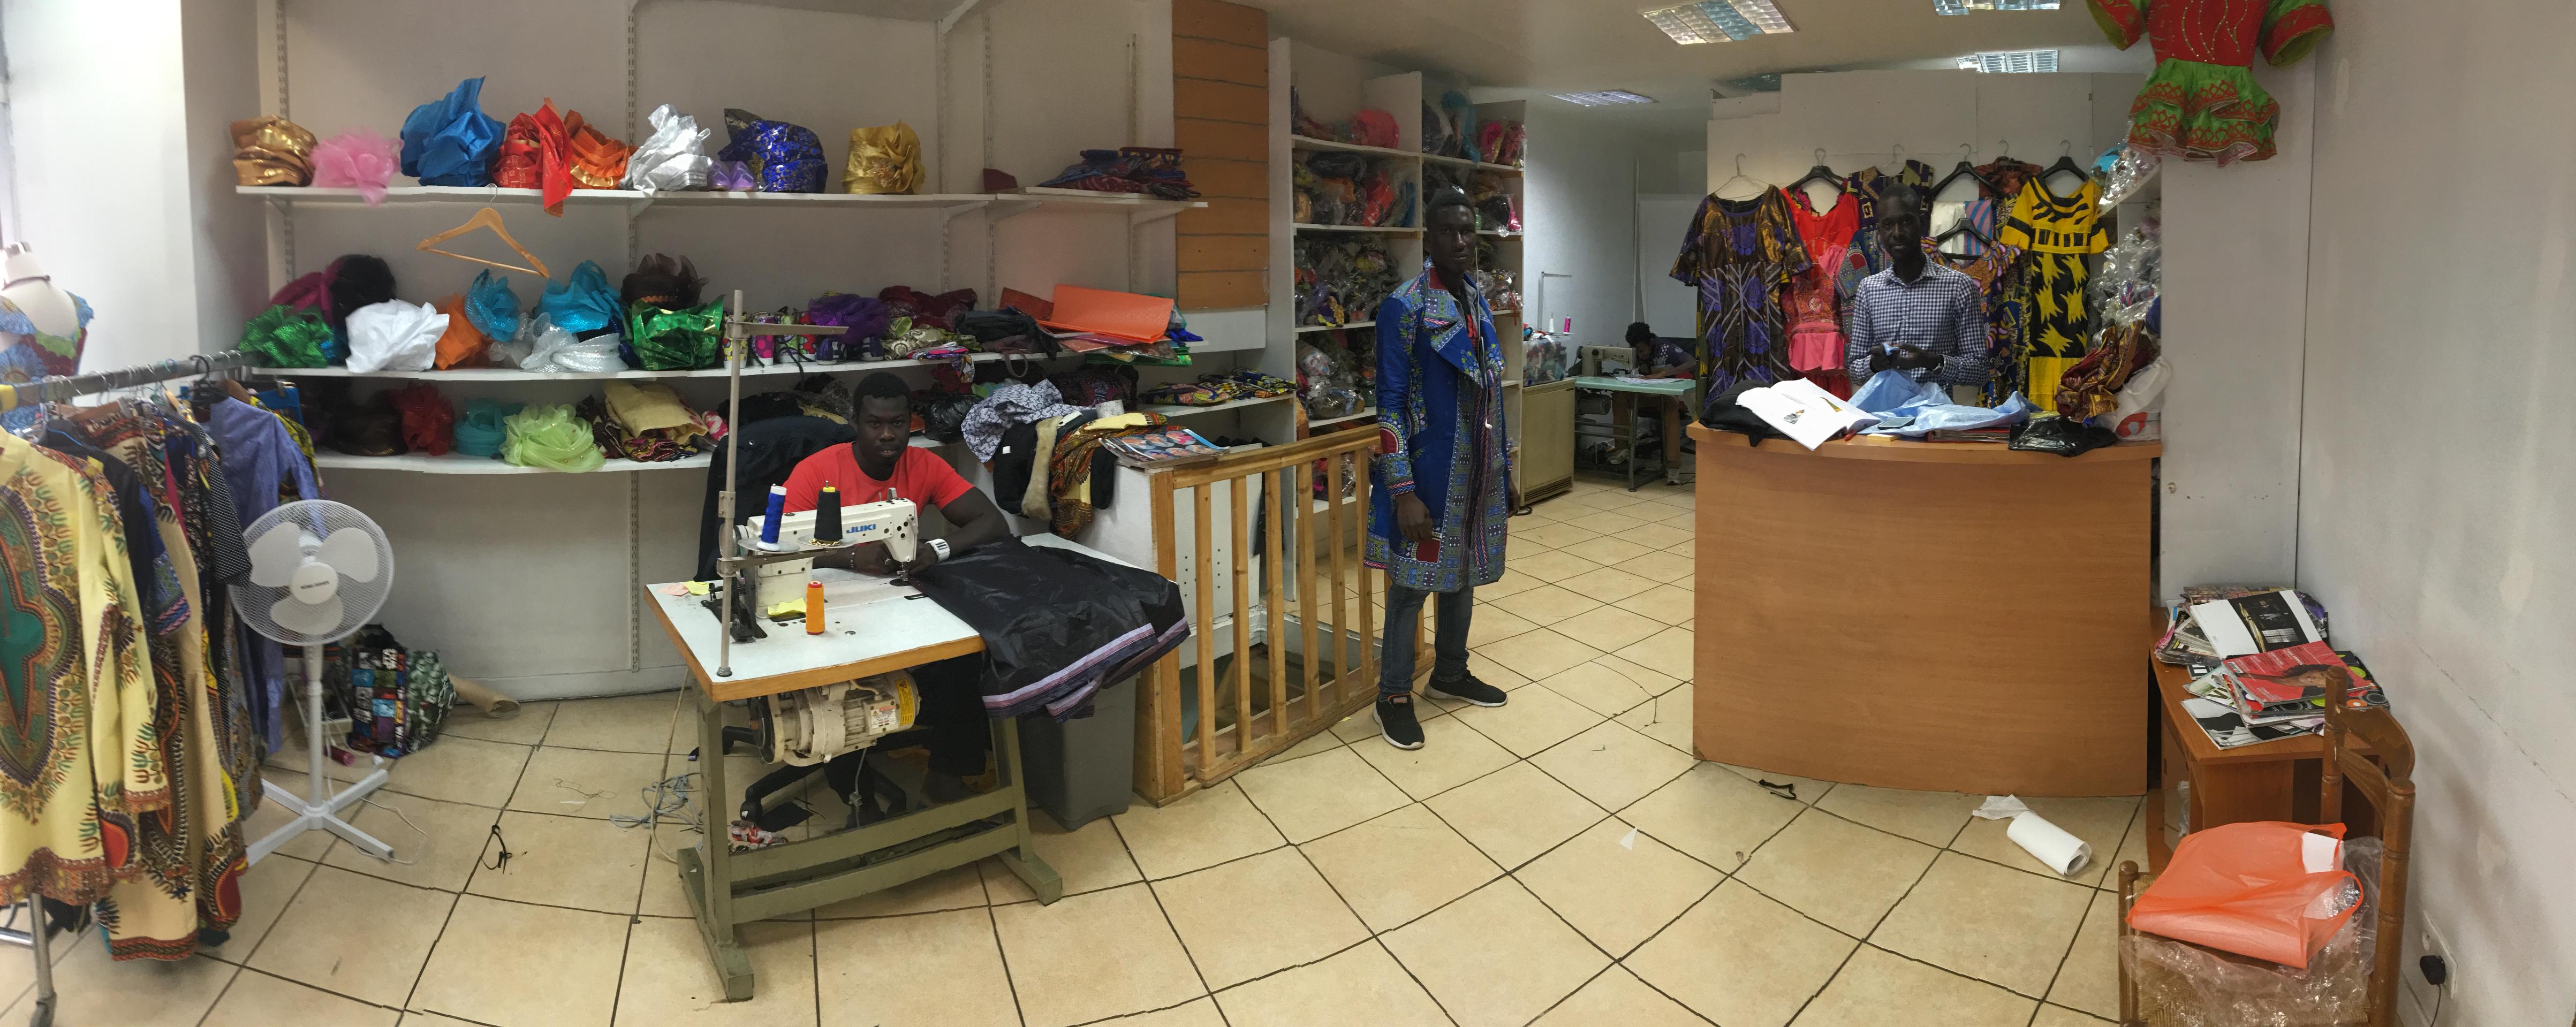 Khar Fashion à Barbès : Chez Khadim Seck, optez pour des coupes afro-européennes